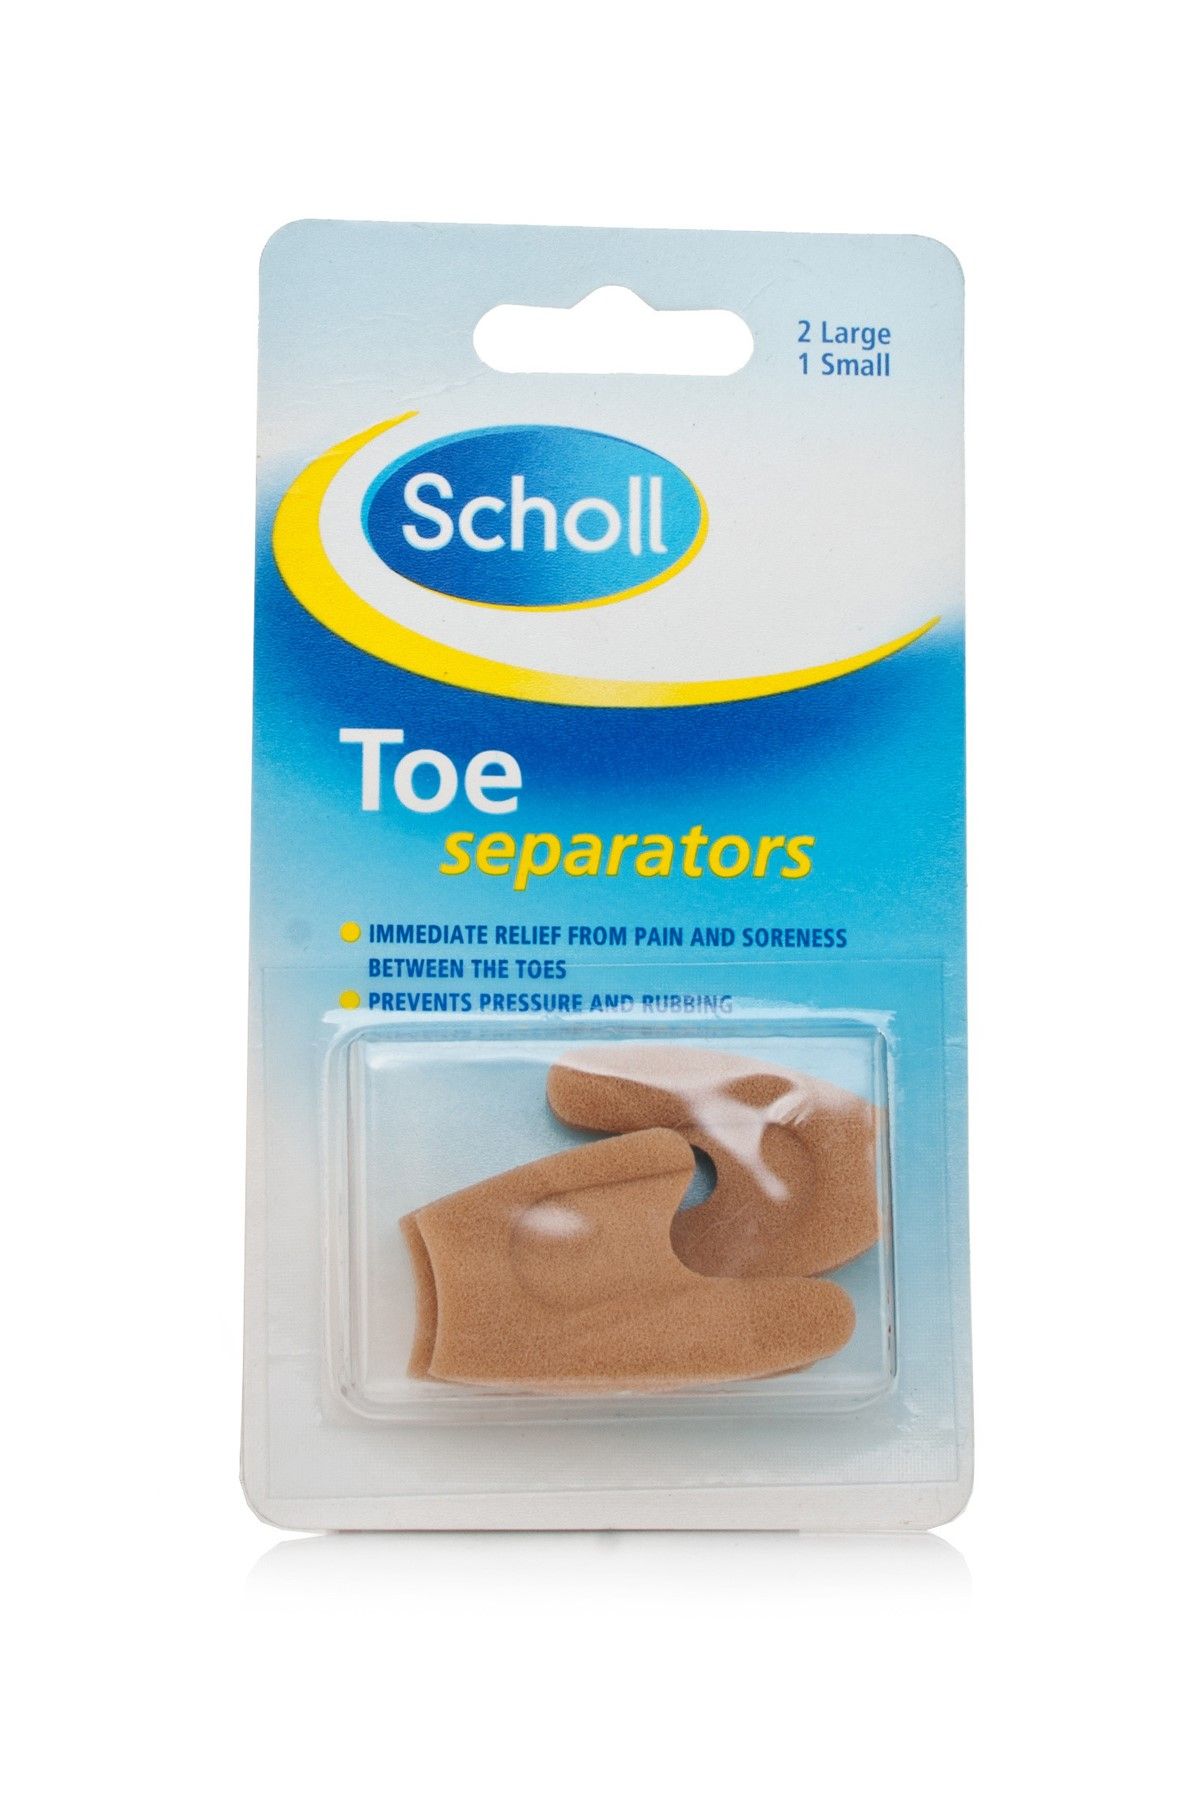 Scholl Parmak Ayracı - Toe Separators 5038483191170